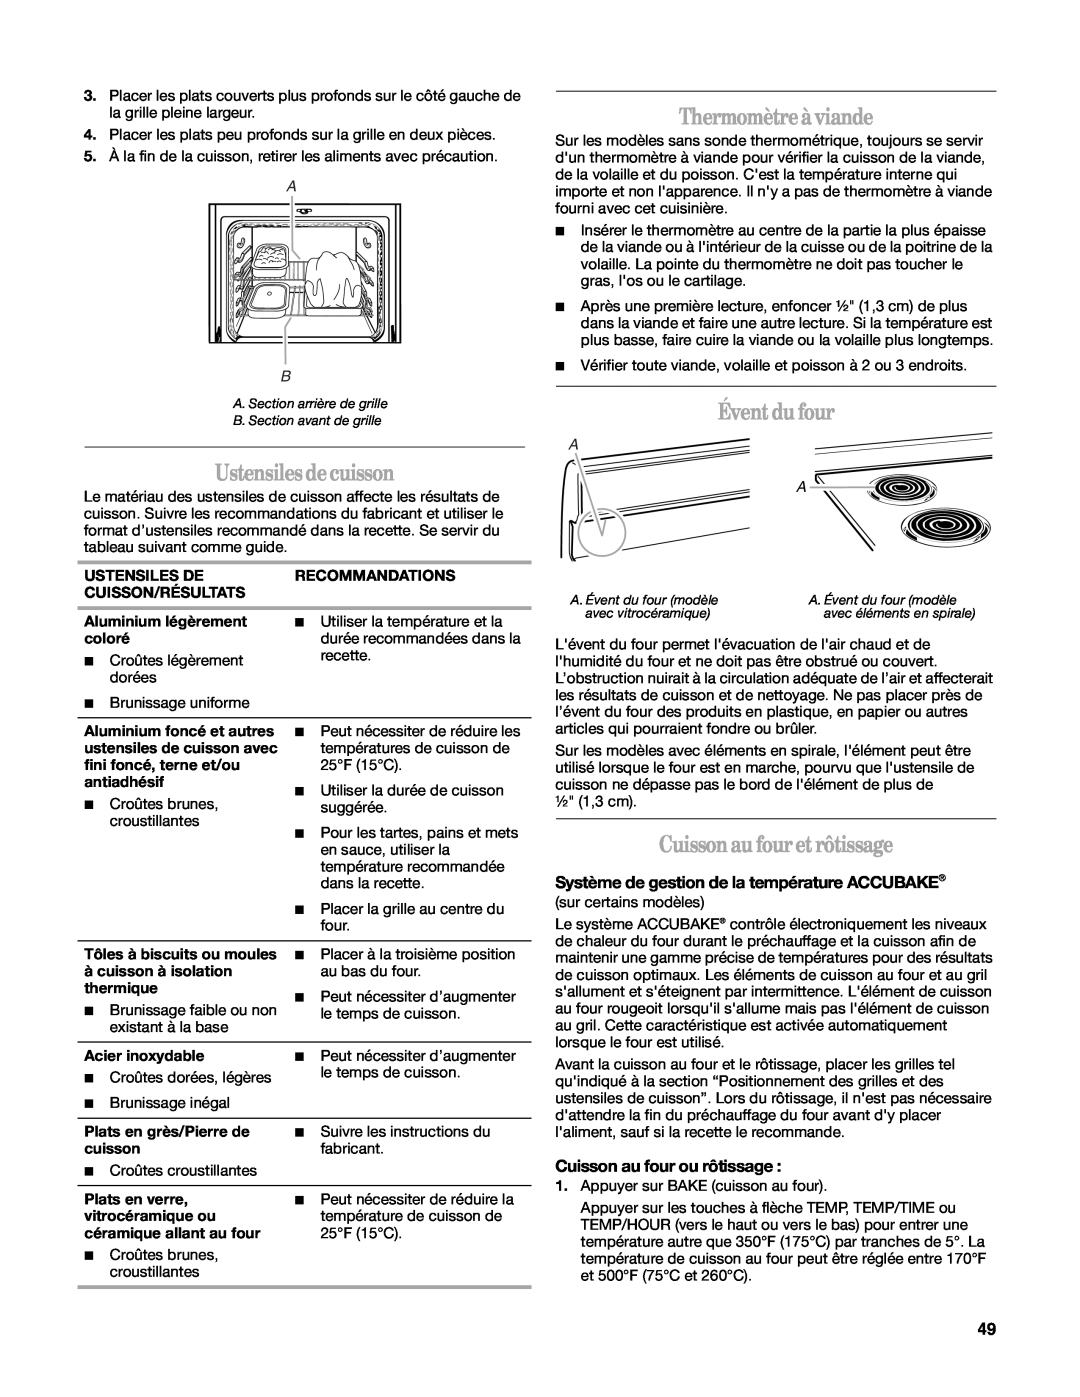 Whirlpool W10162205A manual Thermomètre à viande, Évent du four, Cuisson au four et rôtissage, Cuisson au four ou rôtissage 